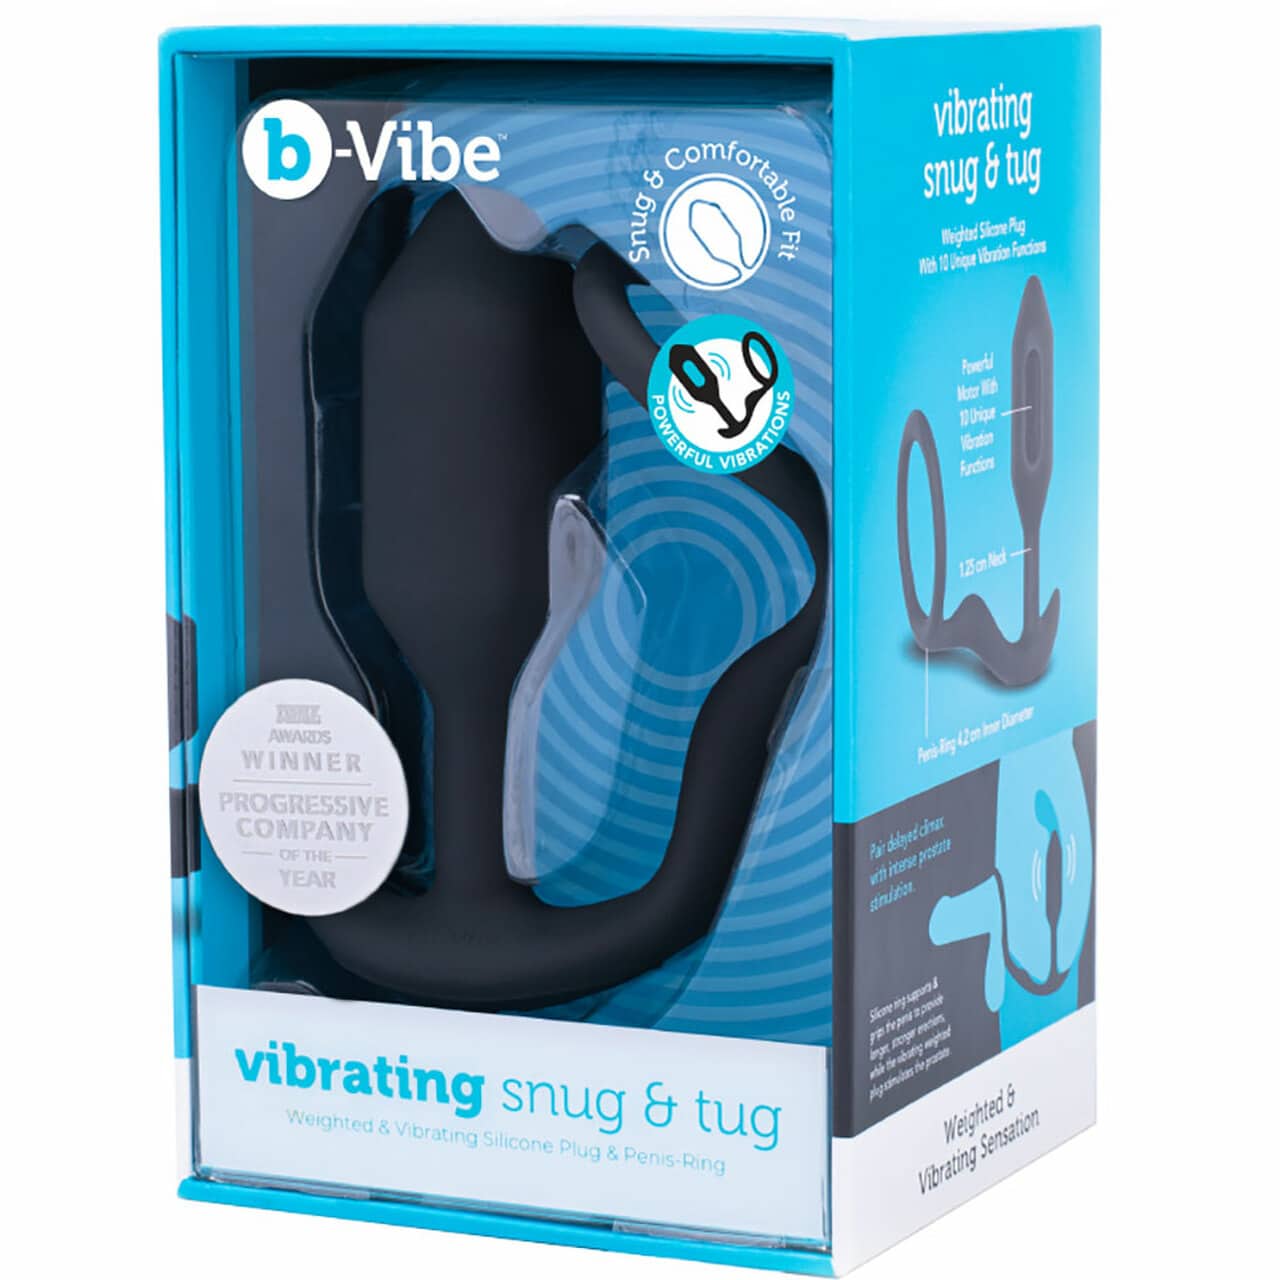 b-Vibe Vibrating Snug & Tug			 			. Slide 7